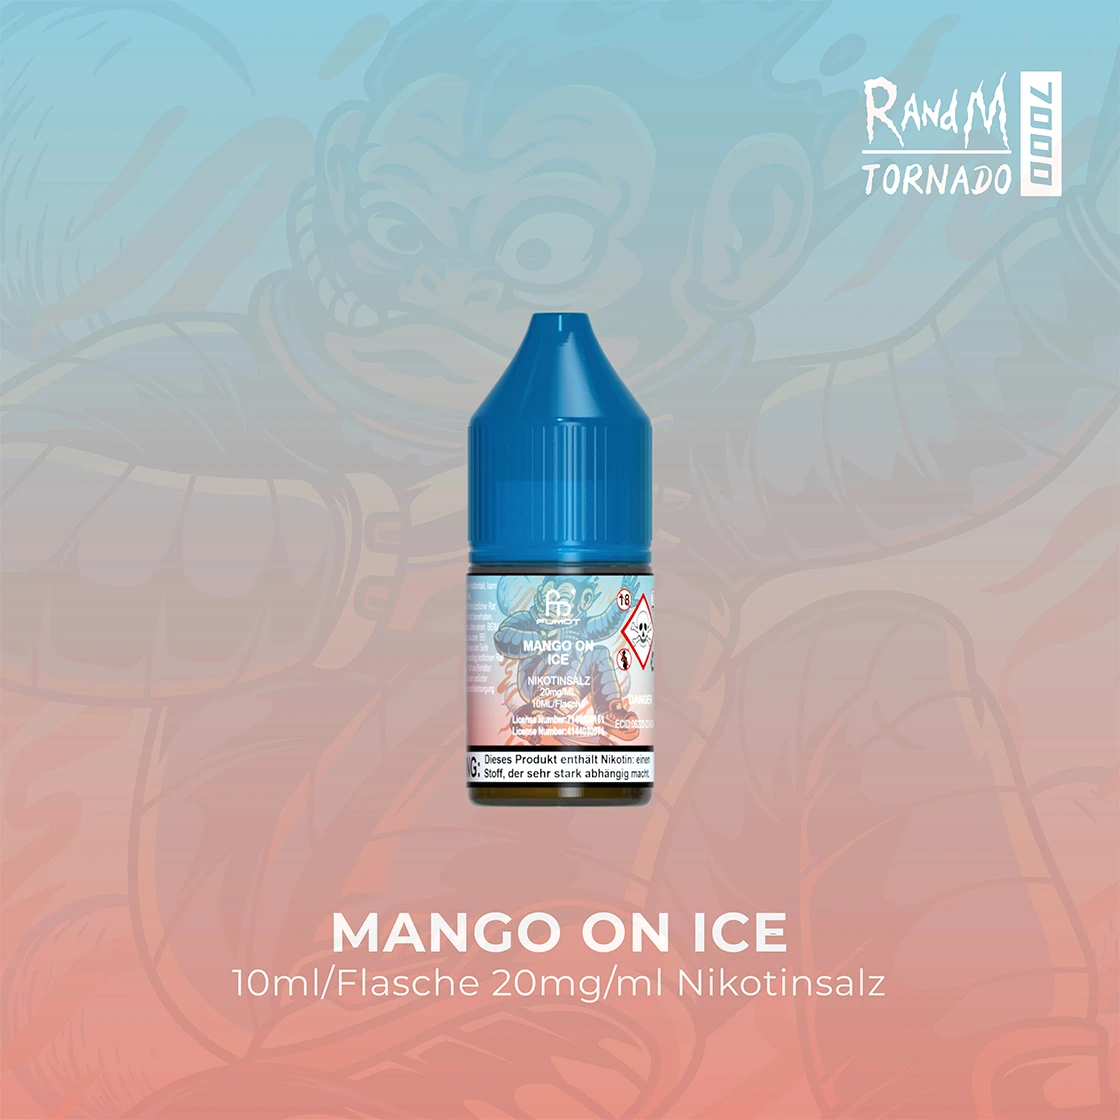 RandM Tornado 7000 Mango on Ice E-Liquid Nikotinsalz 20 mg | Vape Liquids 1